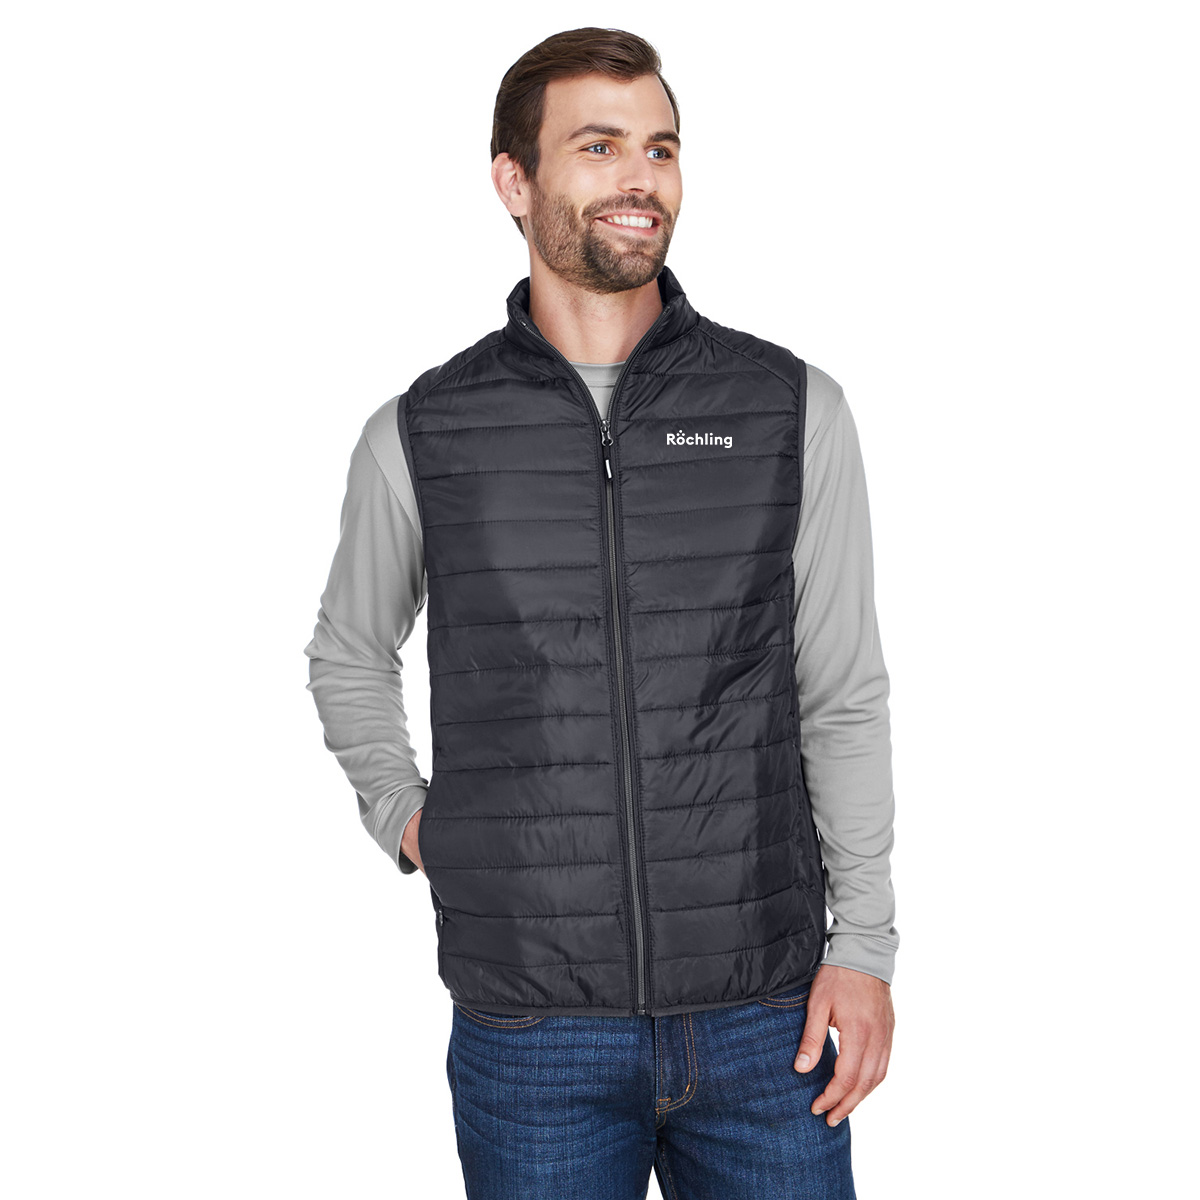 Core 365 Men’s Prevail Packable Puffer Vest – Roechling